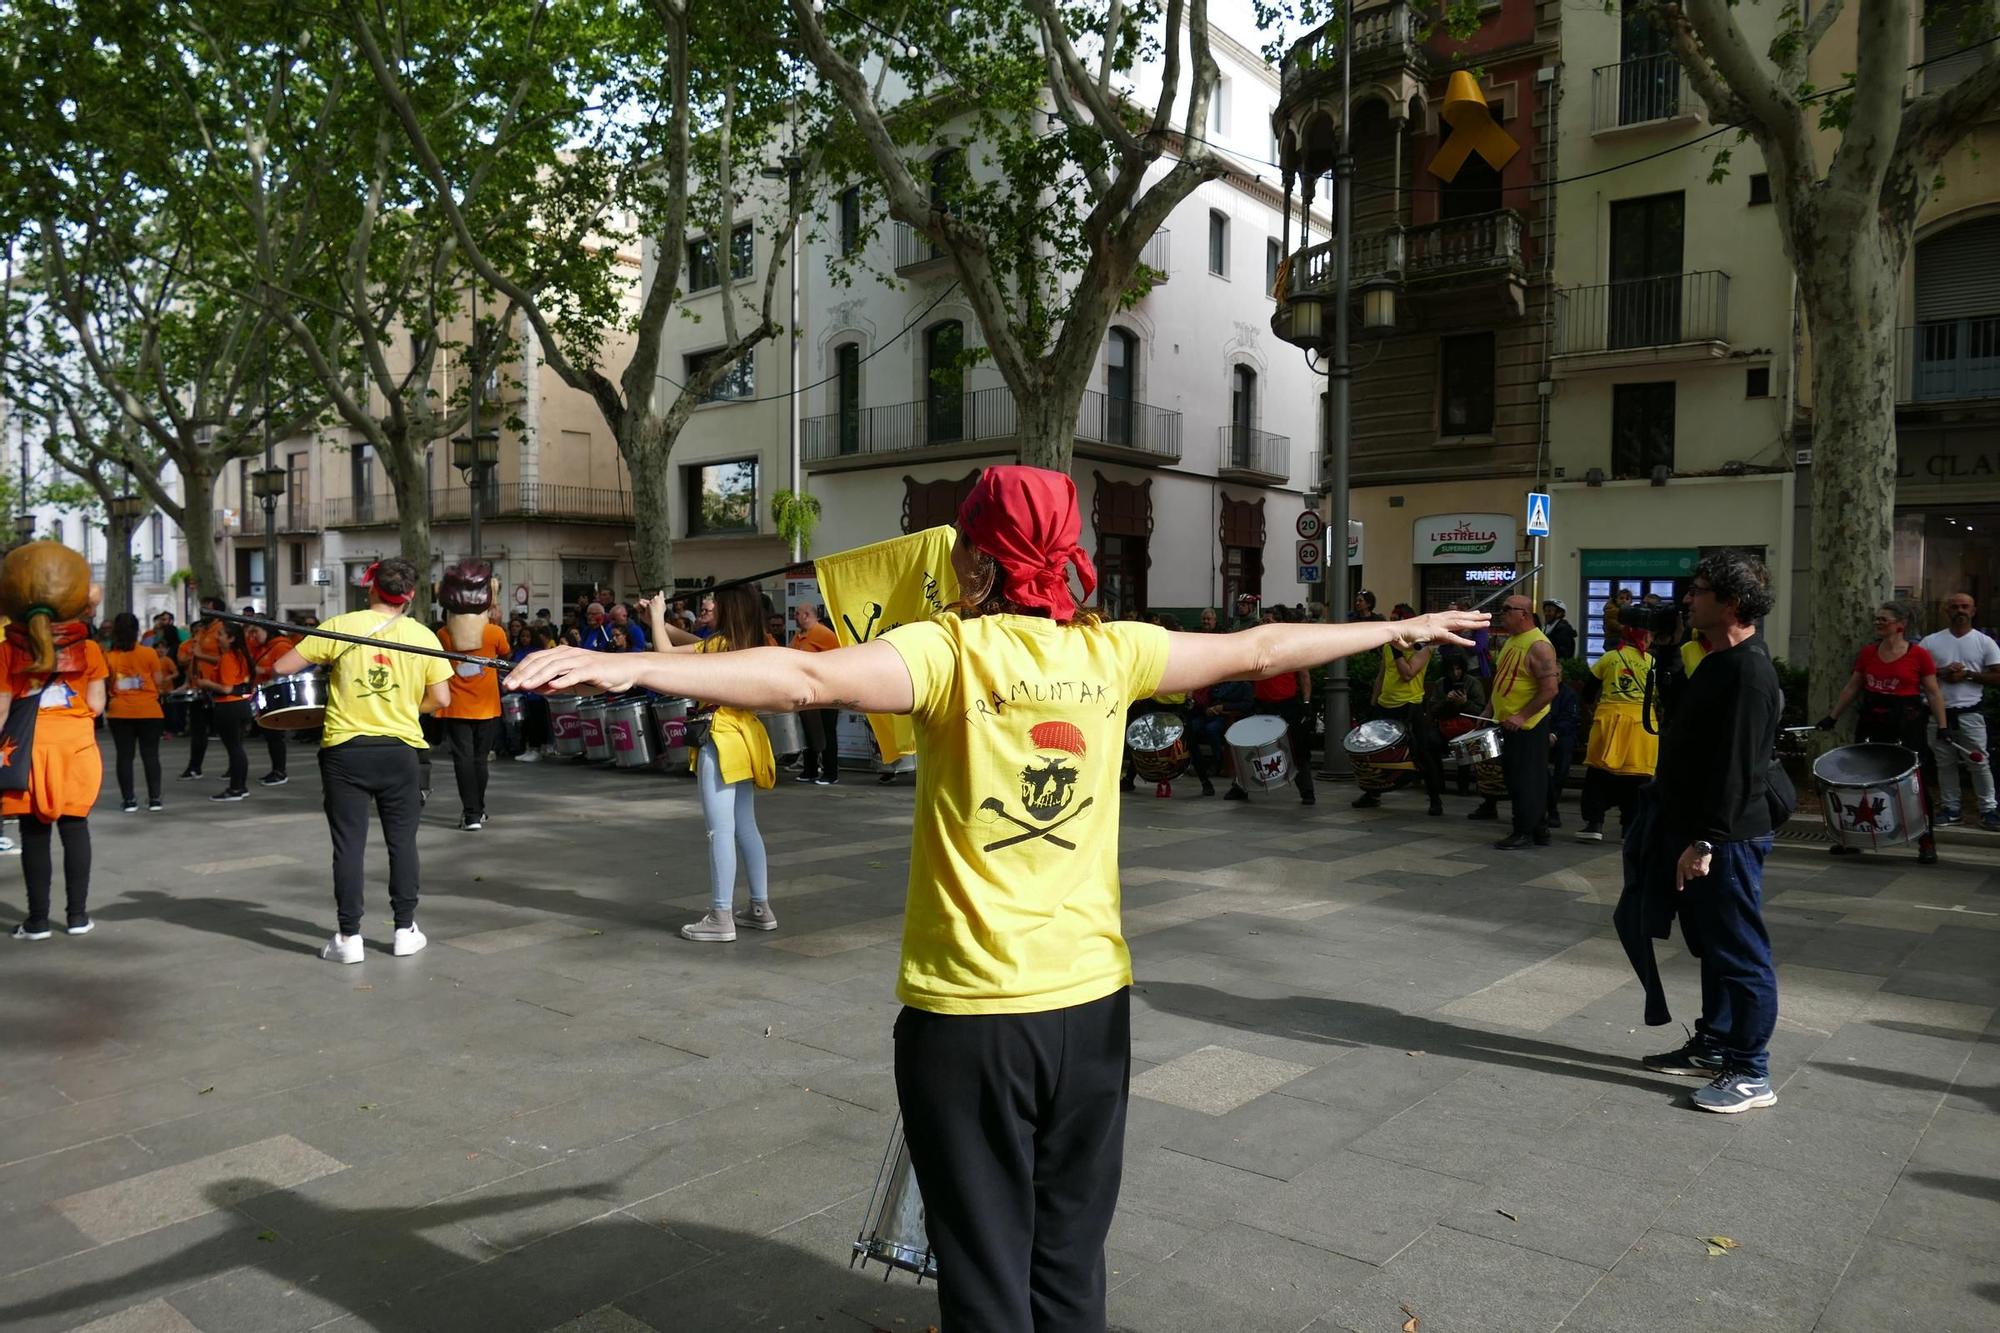 Figueres ressona amb una gran batucada de Santa Creu